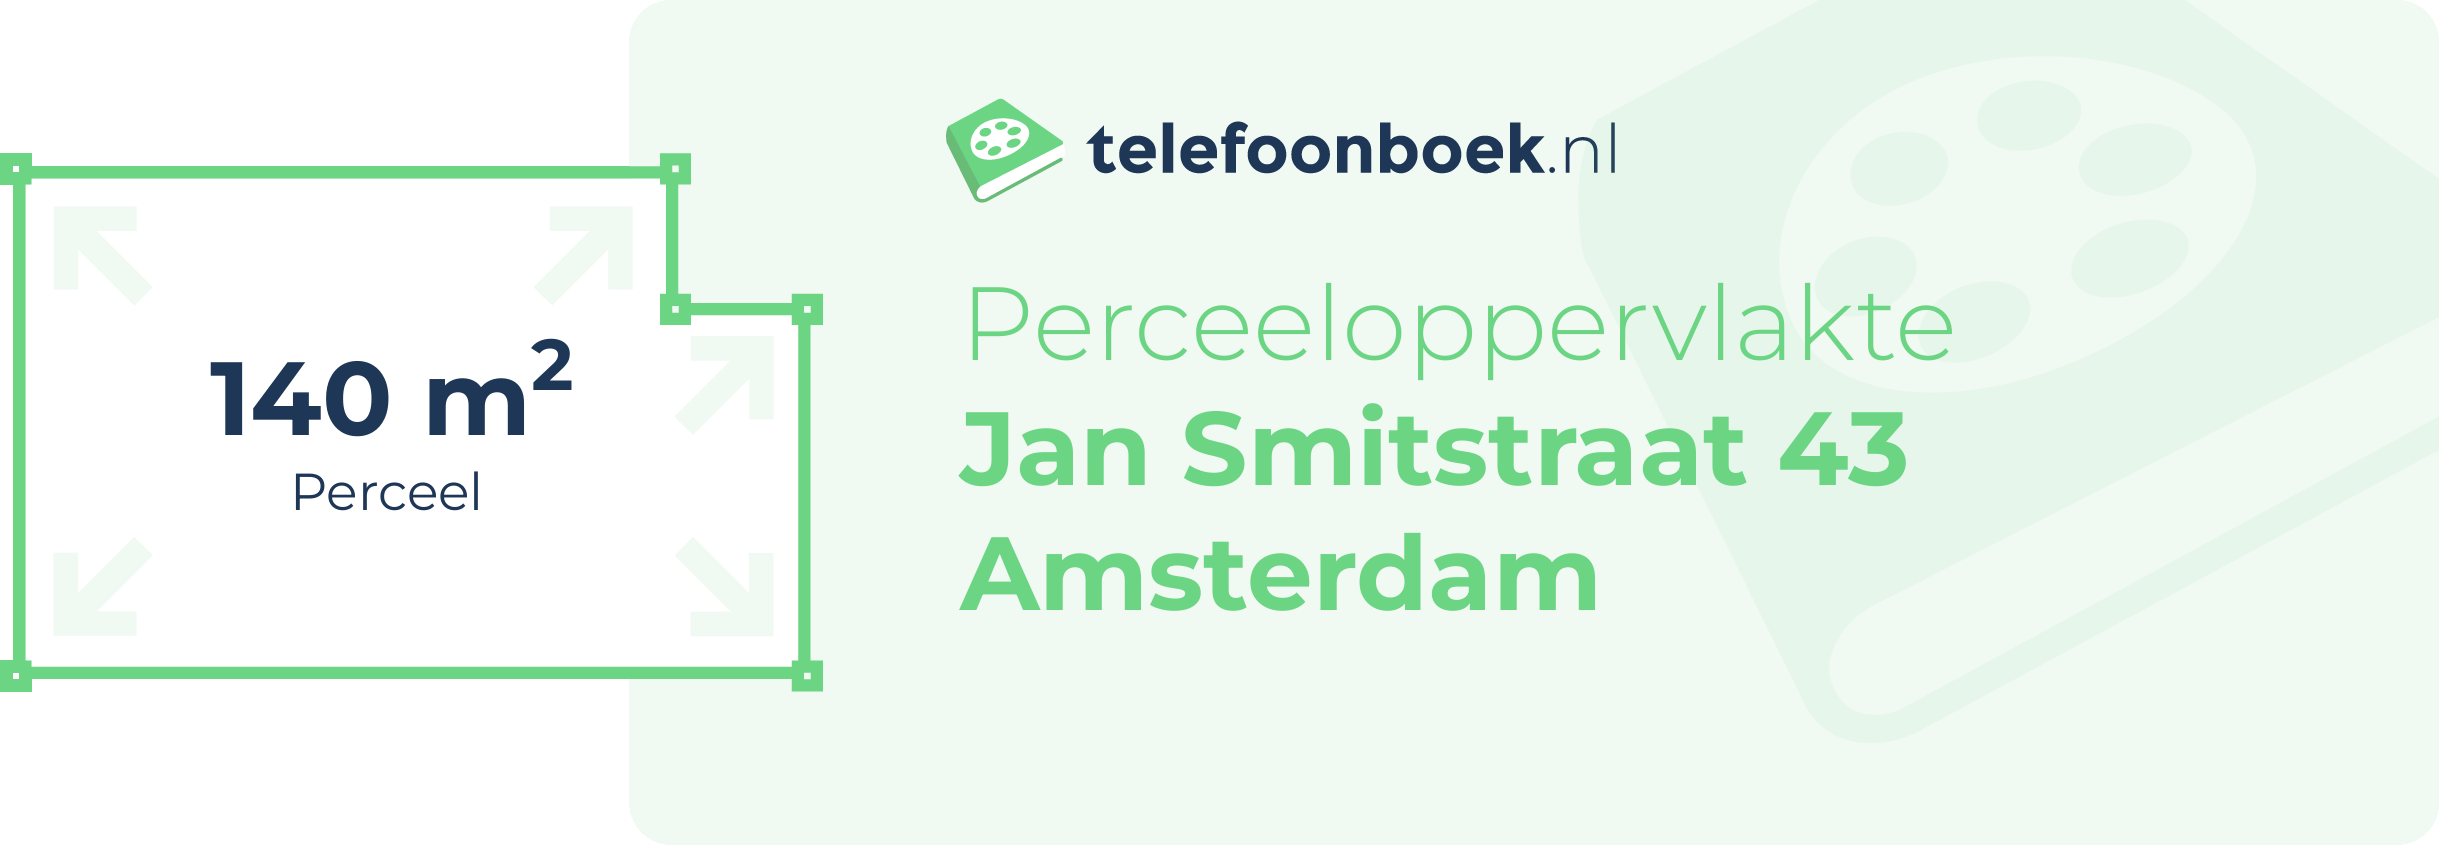 Perceeloppervlakte Jan Smitstraat 43 Amsterdam